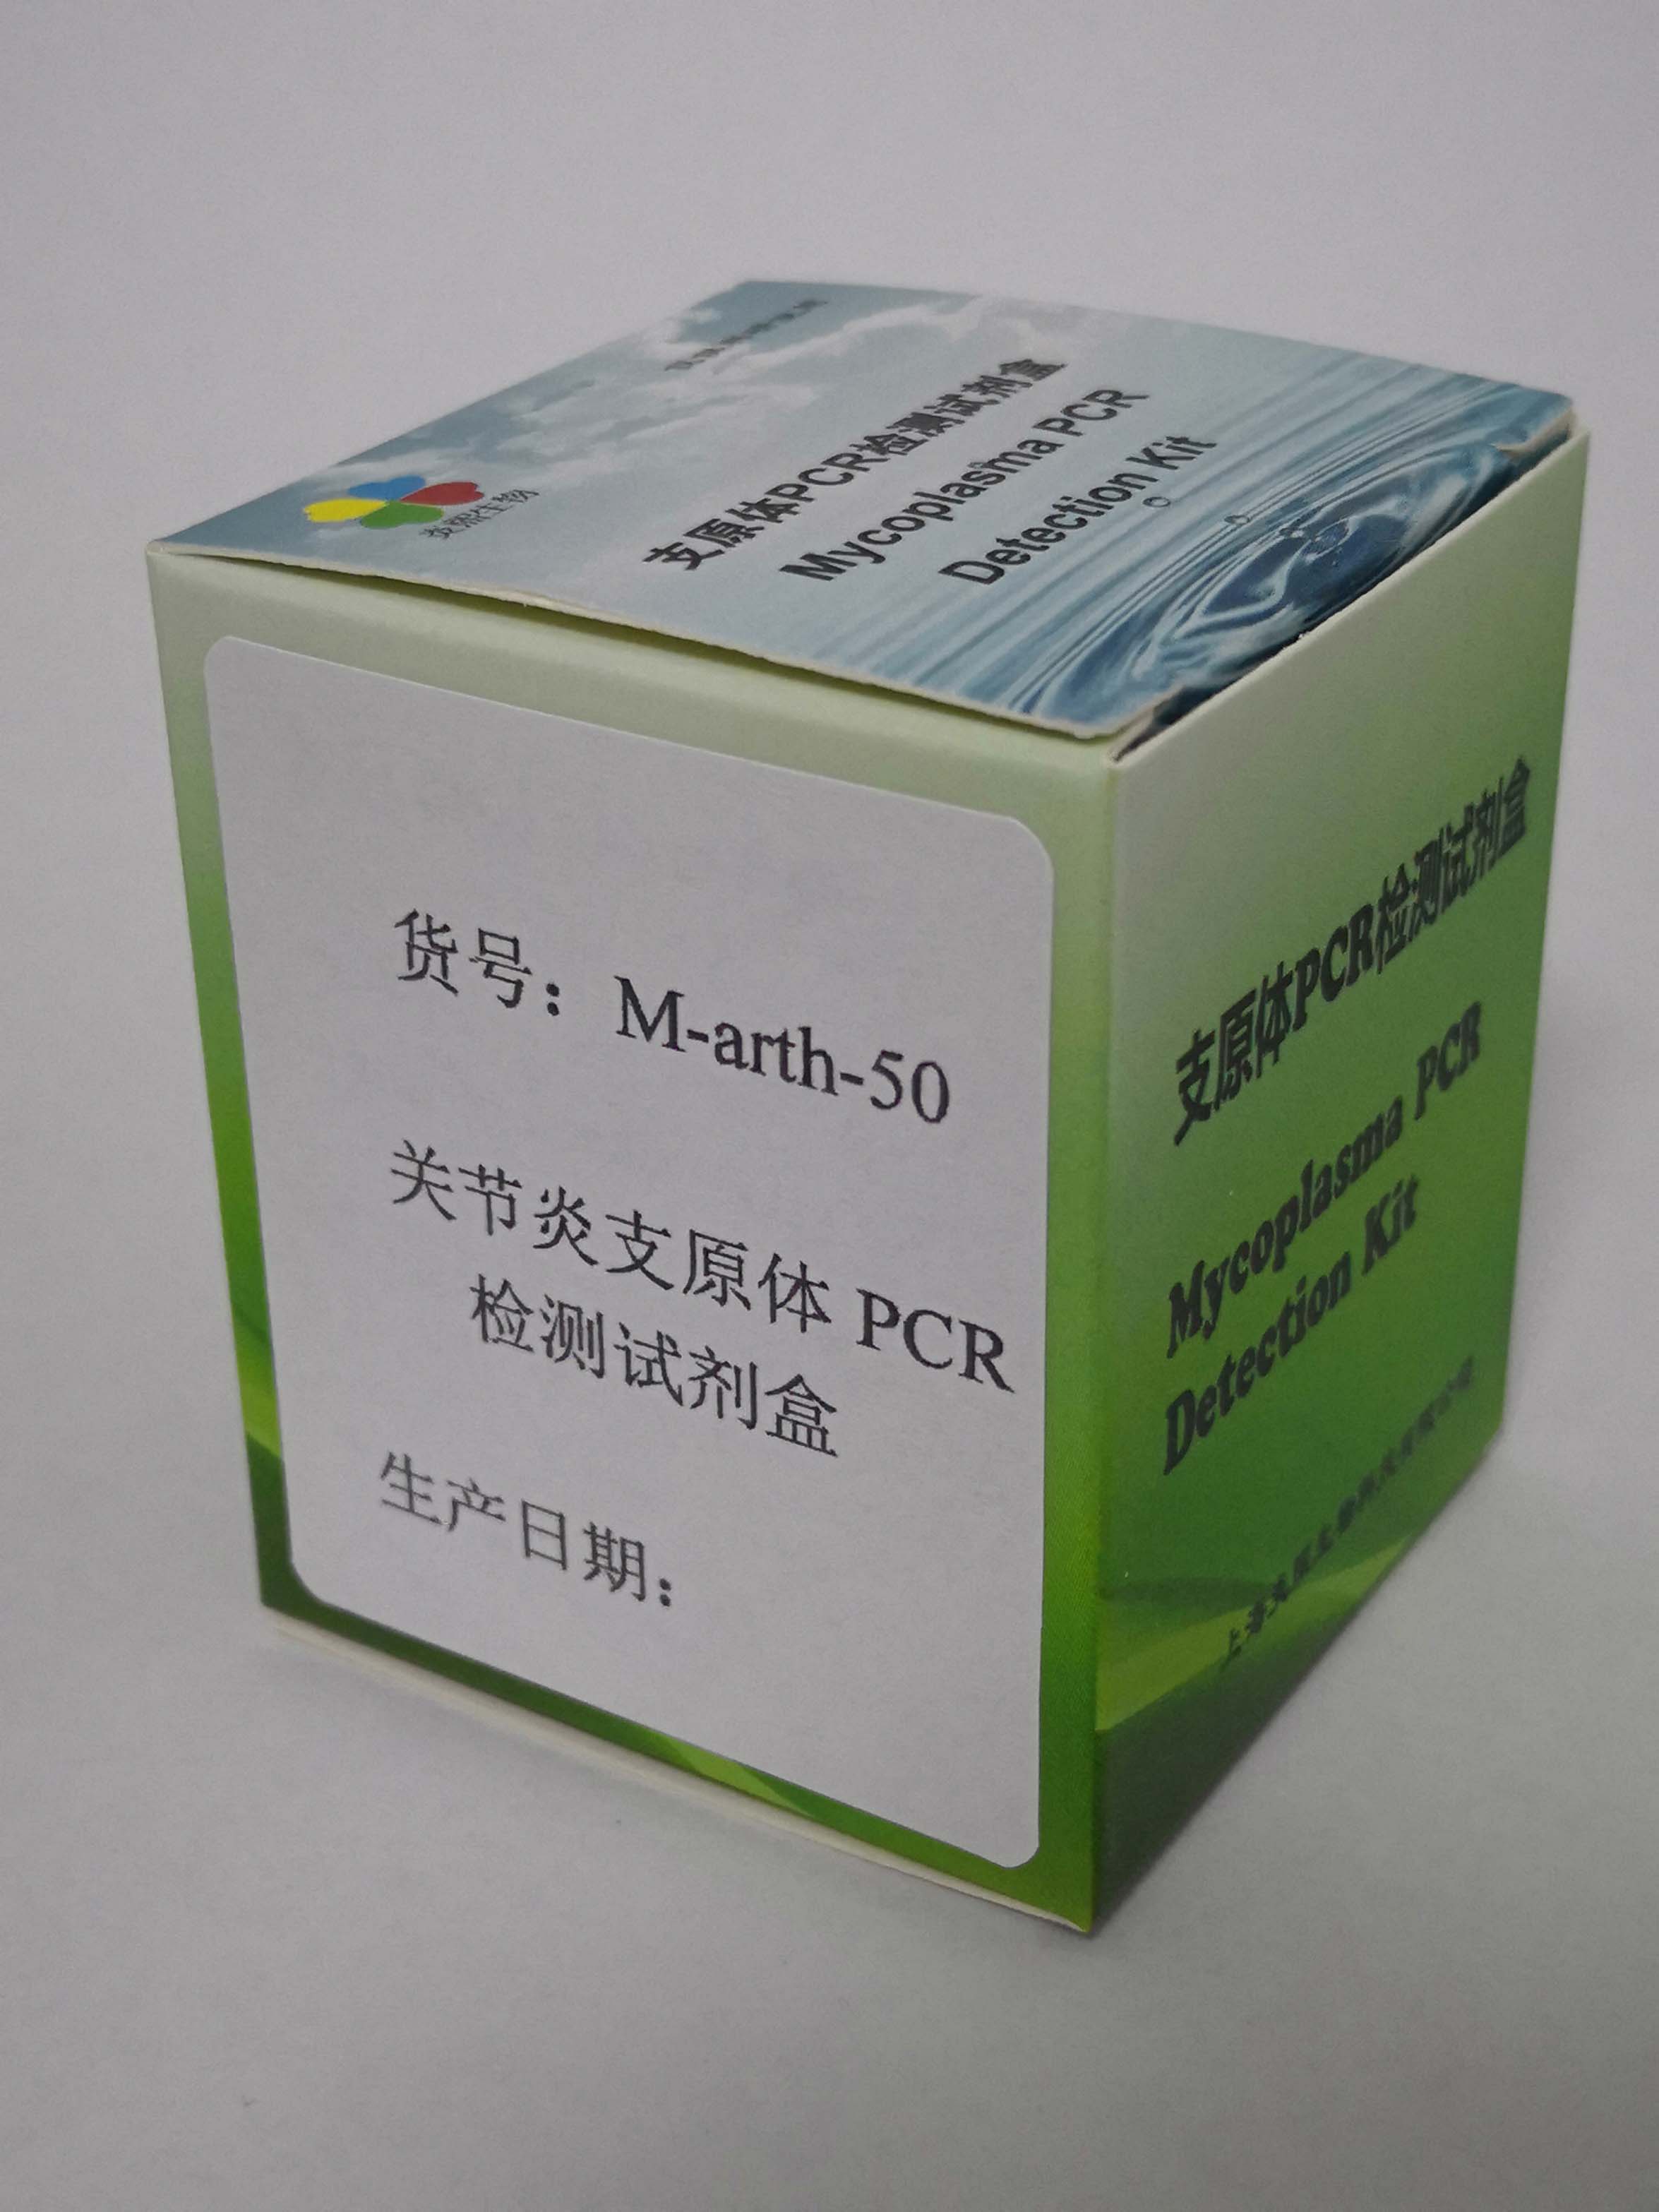 上海市关节炎支原体PCR检测试剂盒厂家关节炎支原体PCR检测试剂盒